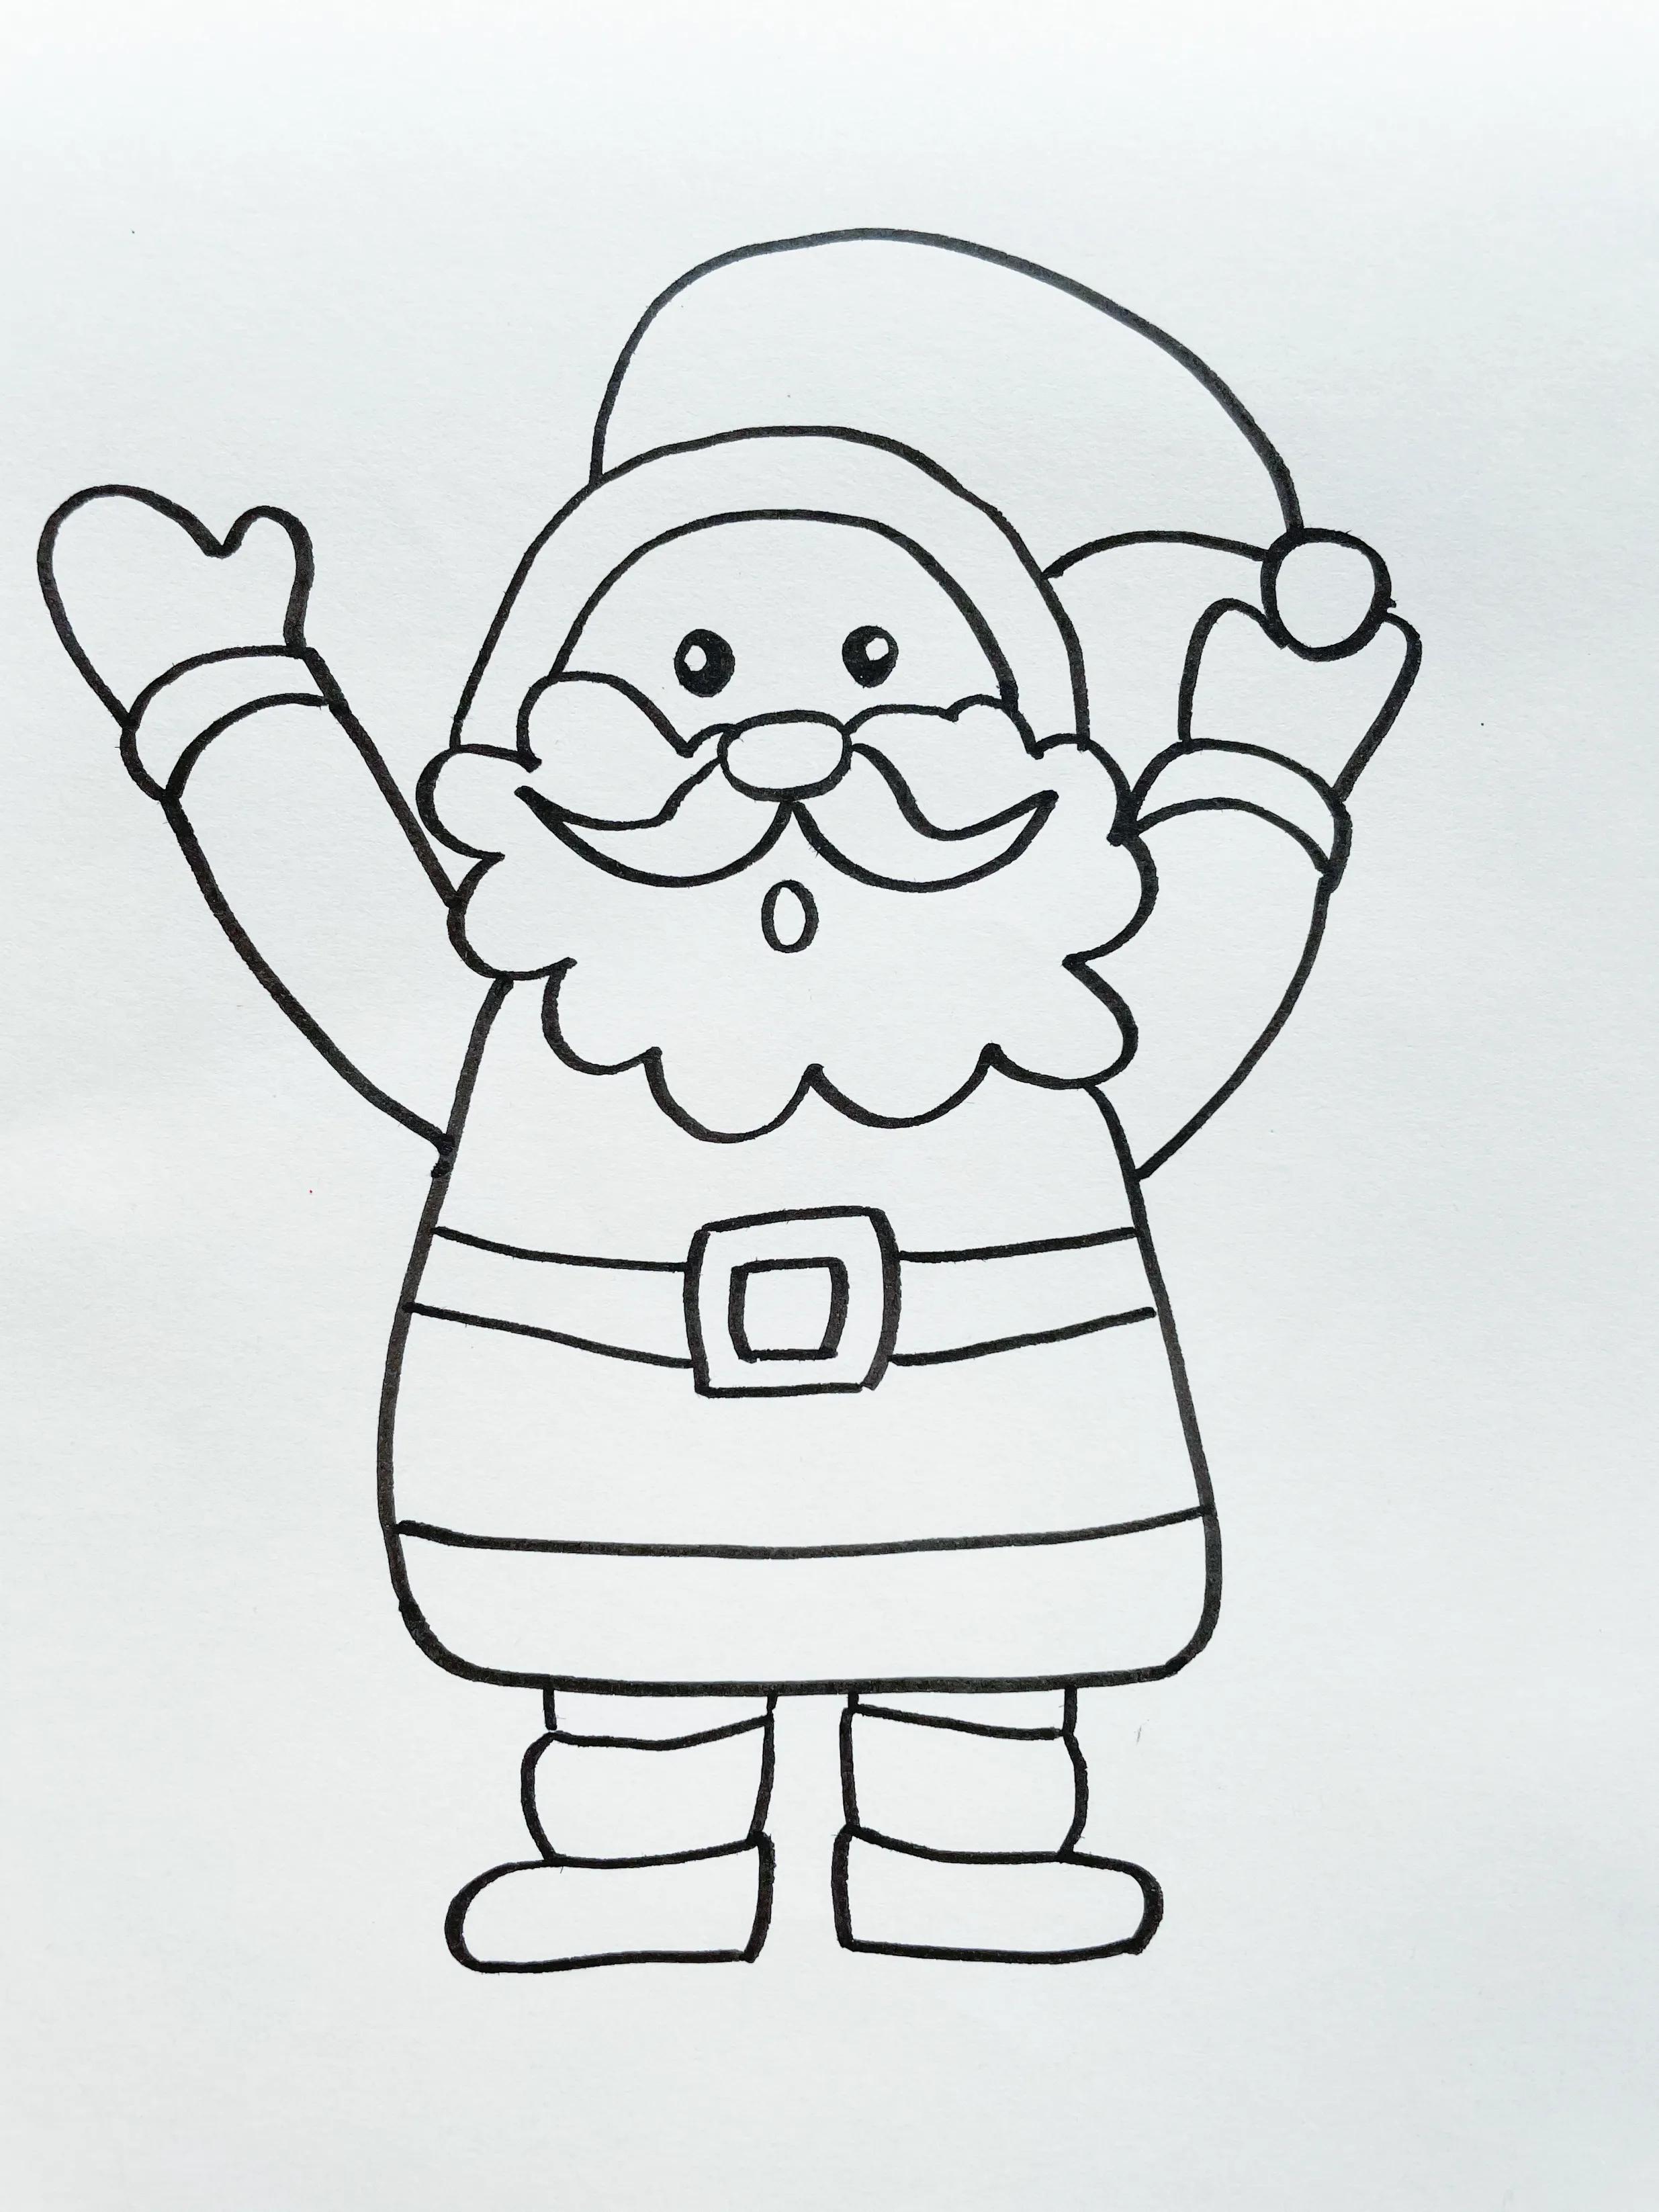 快到要圣诞节了，圣诞老人该怎么画呢？快教给孩子画一个吧